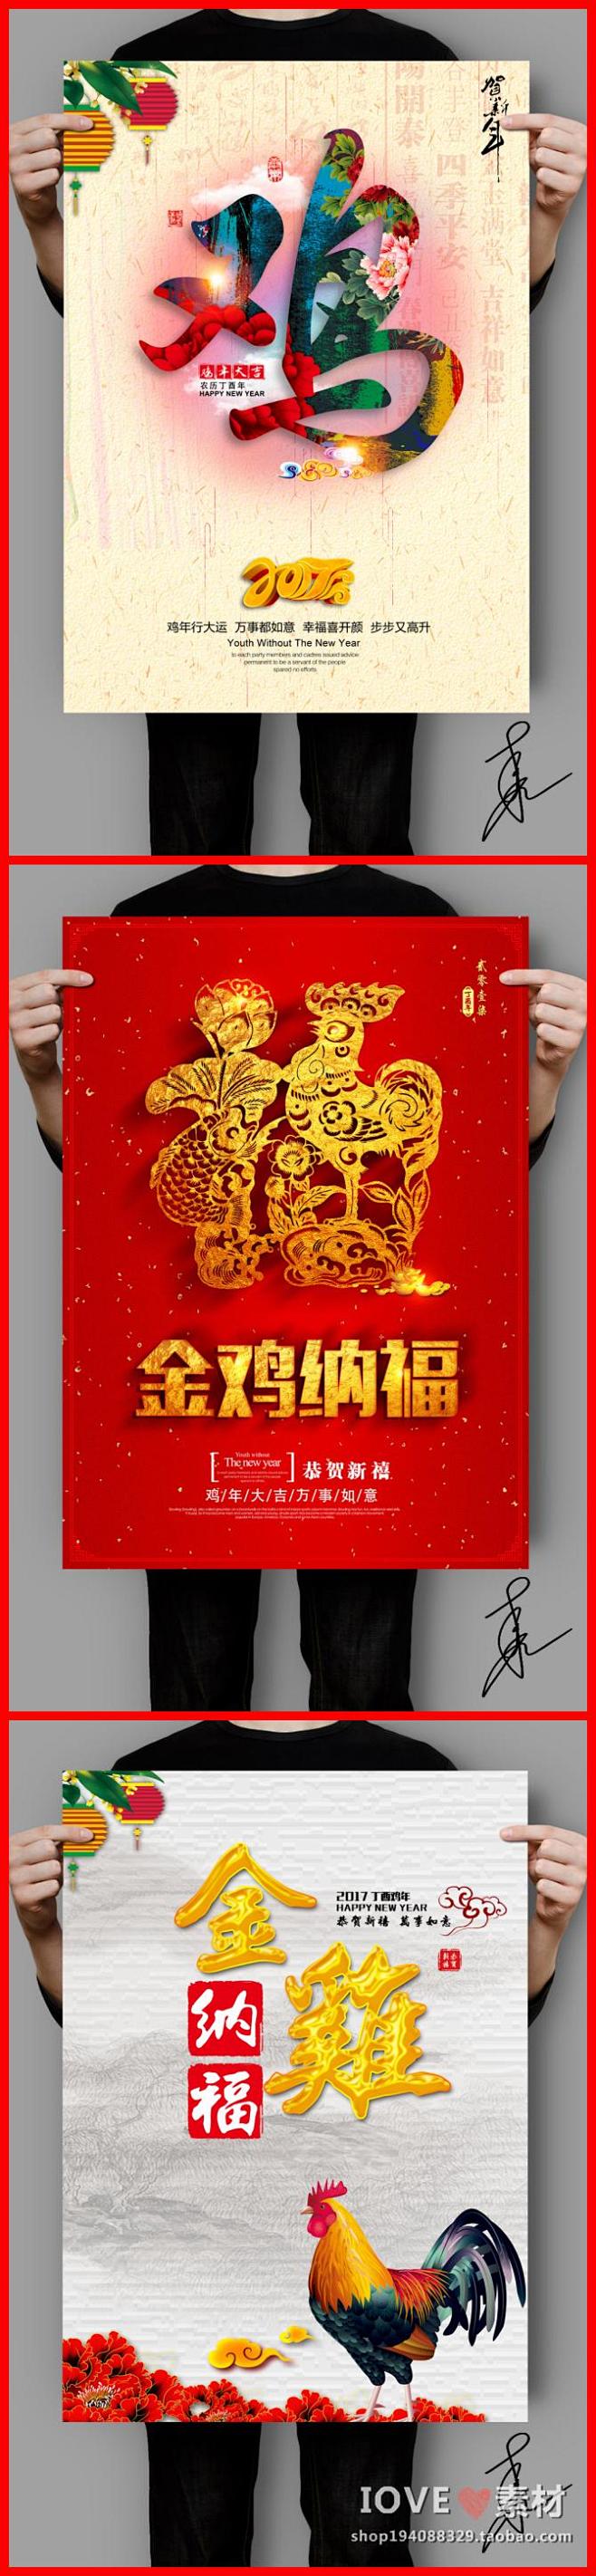 2017年新年元旦鸡年晚会活动宣传海报展...